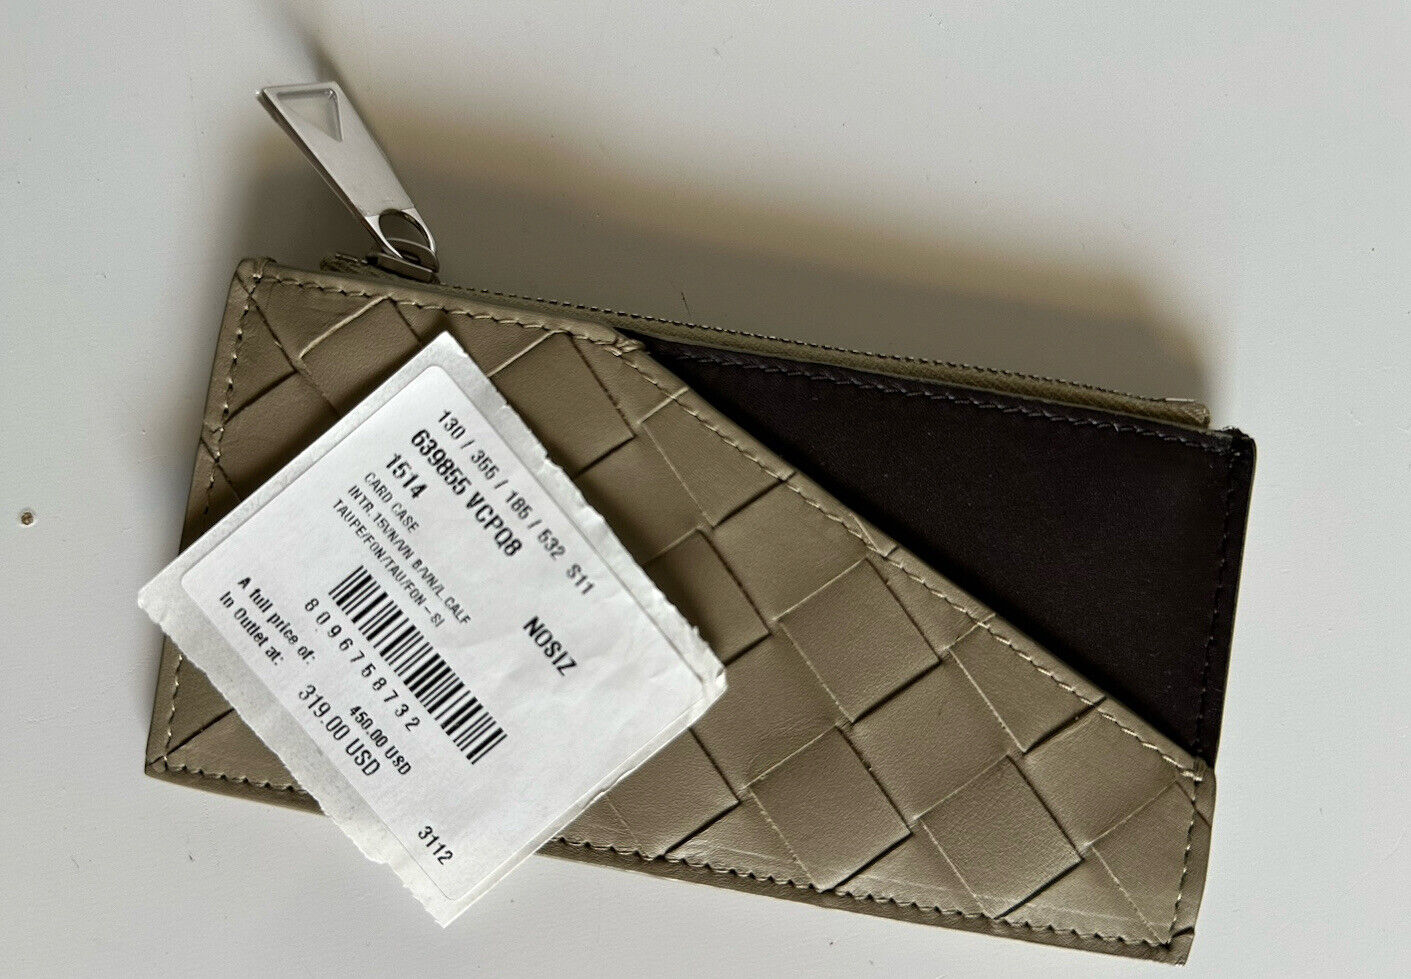 NWT $450 Bottega Veneta Тонкий длинный кожаный кошелек на молнии с переплетением Intrecciato Италия